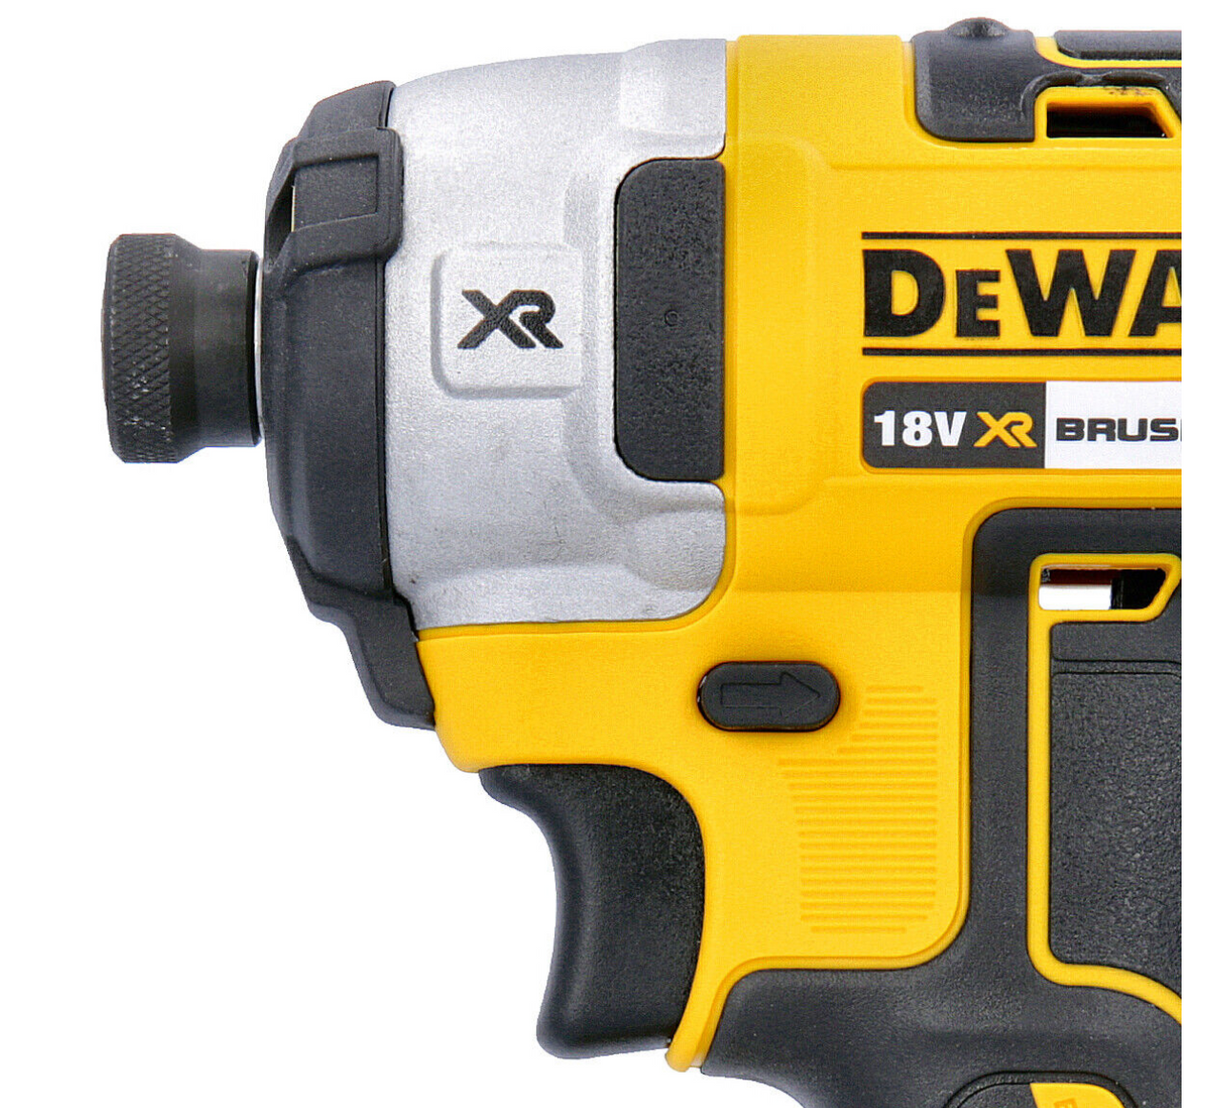 DEWALT DCF887N 18v Brushless Impact Driver - ToolStore UK